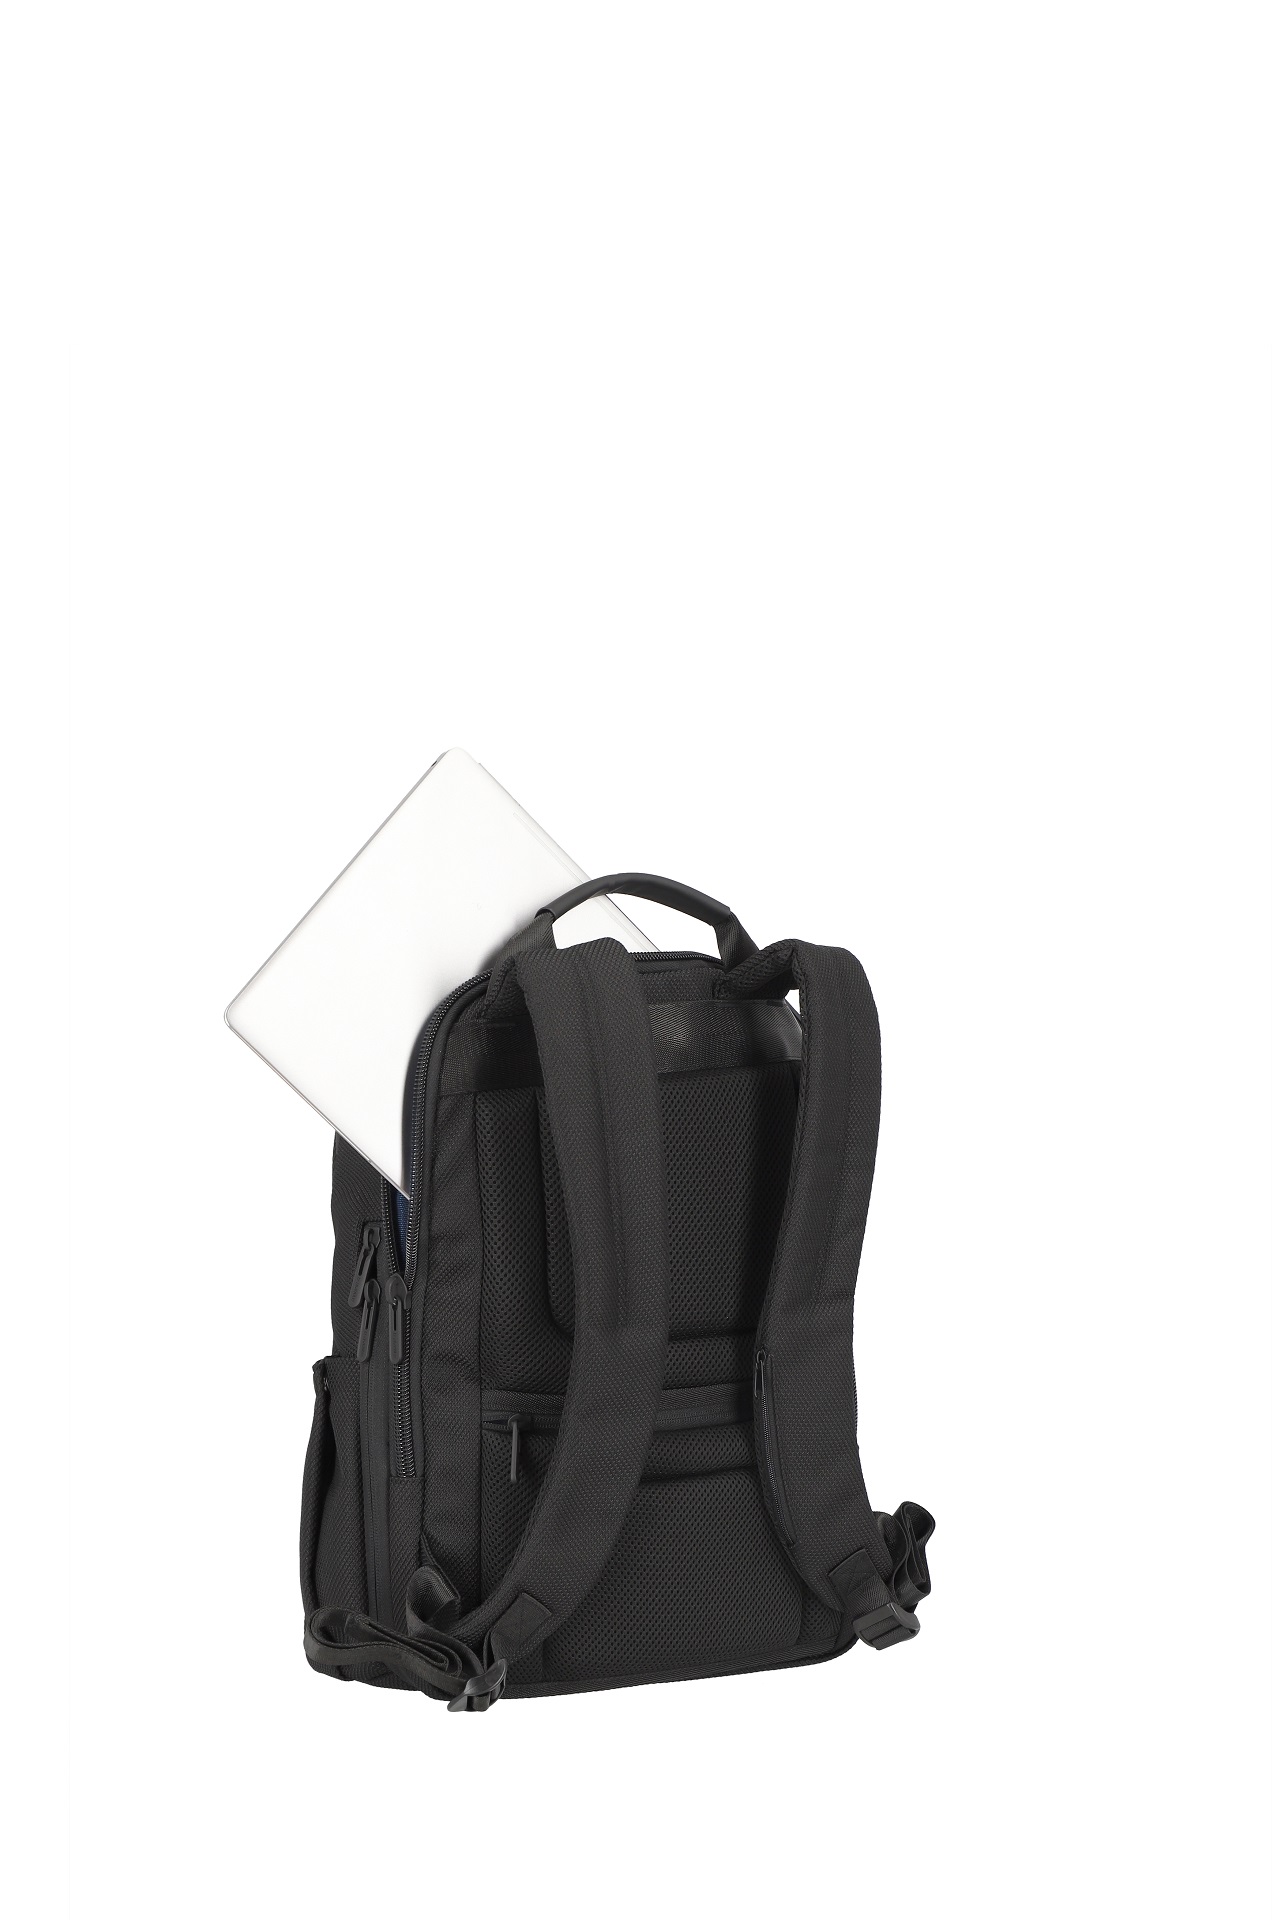 Travelite Meet Backpack exp Black